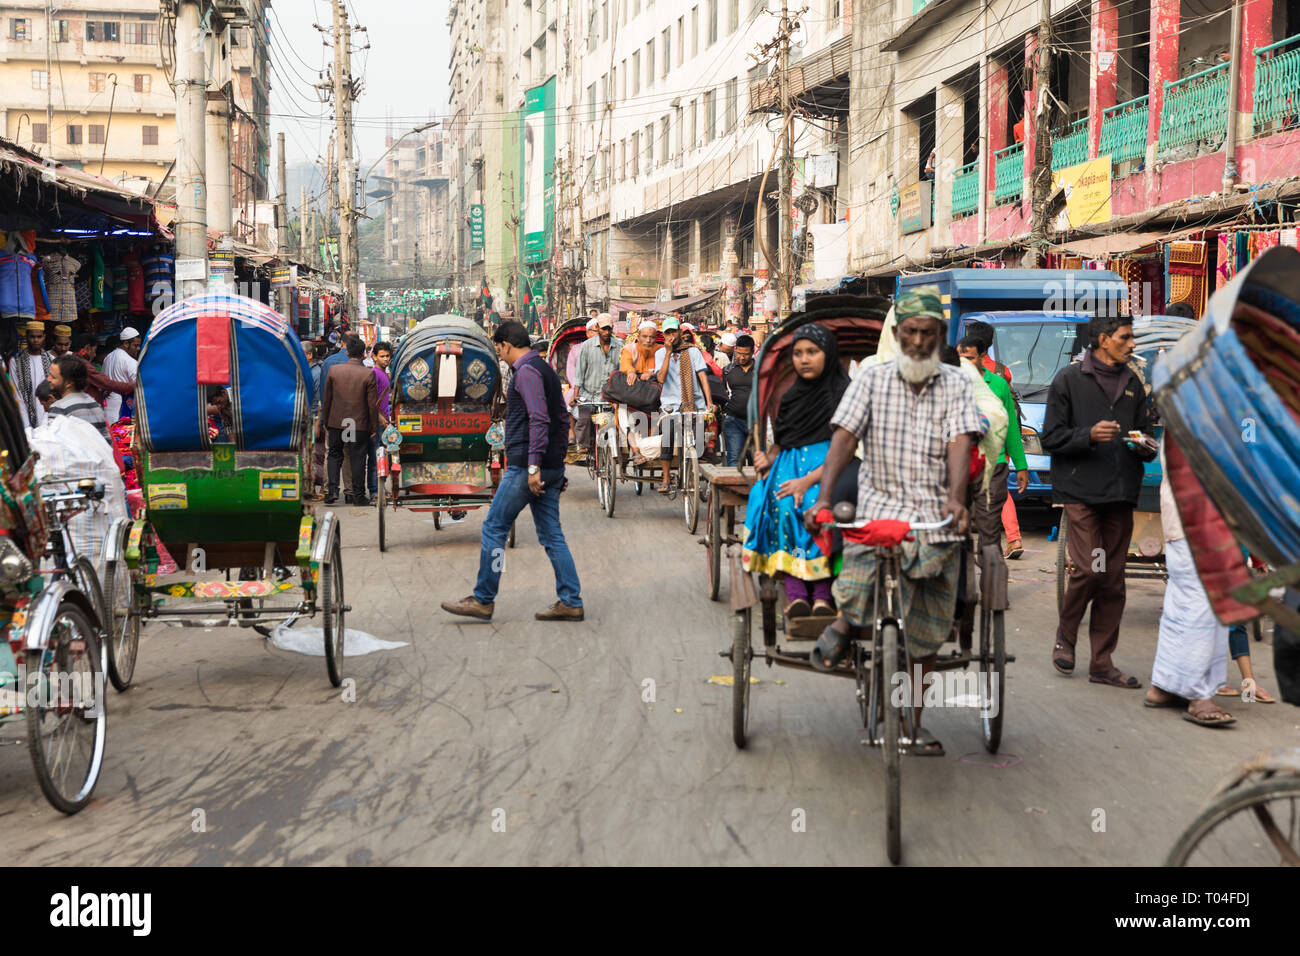 Llenado de una calle muy transitada en el centro de la ciudad de Dhaka. Rickshaws, autobuses, coches y personas compiten por un espacio en la calle llena de gente. Foto de stock